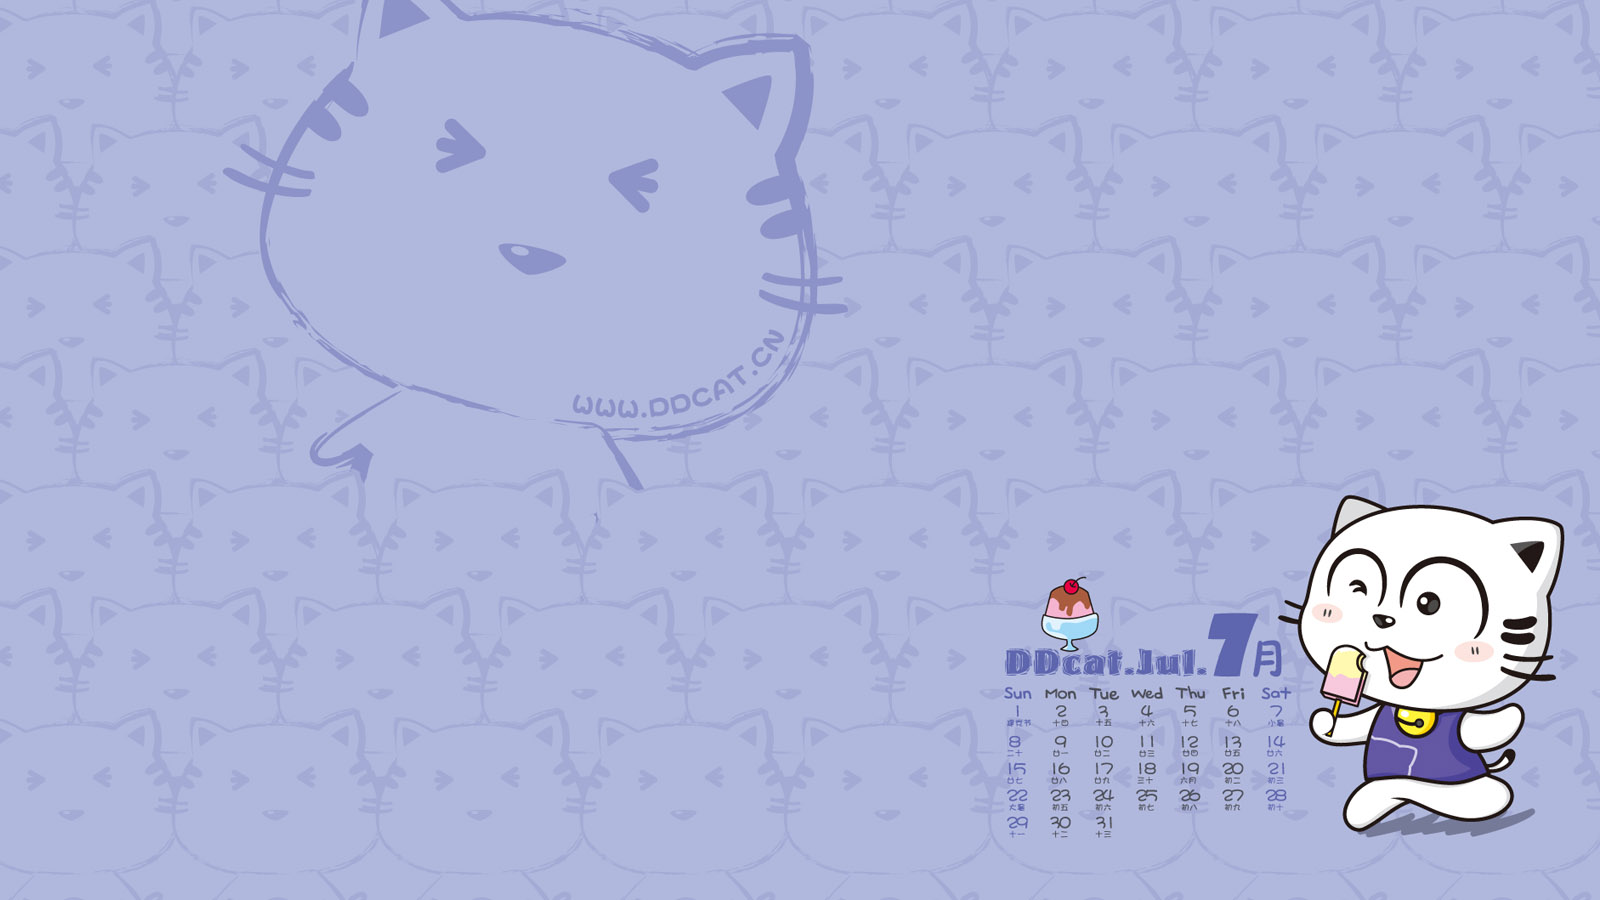 Ding Dong cat July 2012 calendar wallpaper